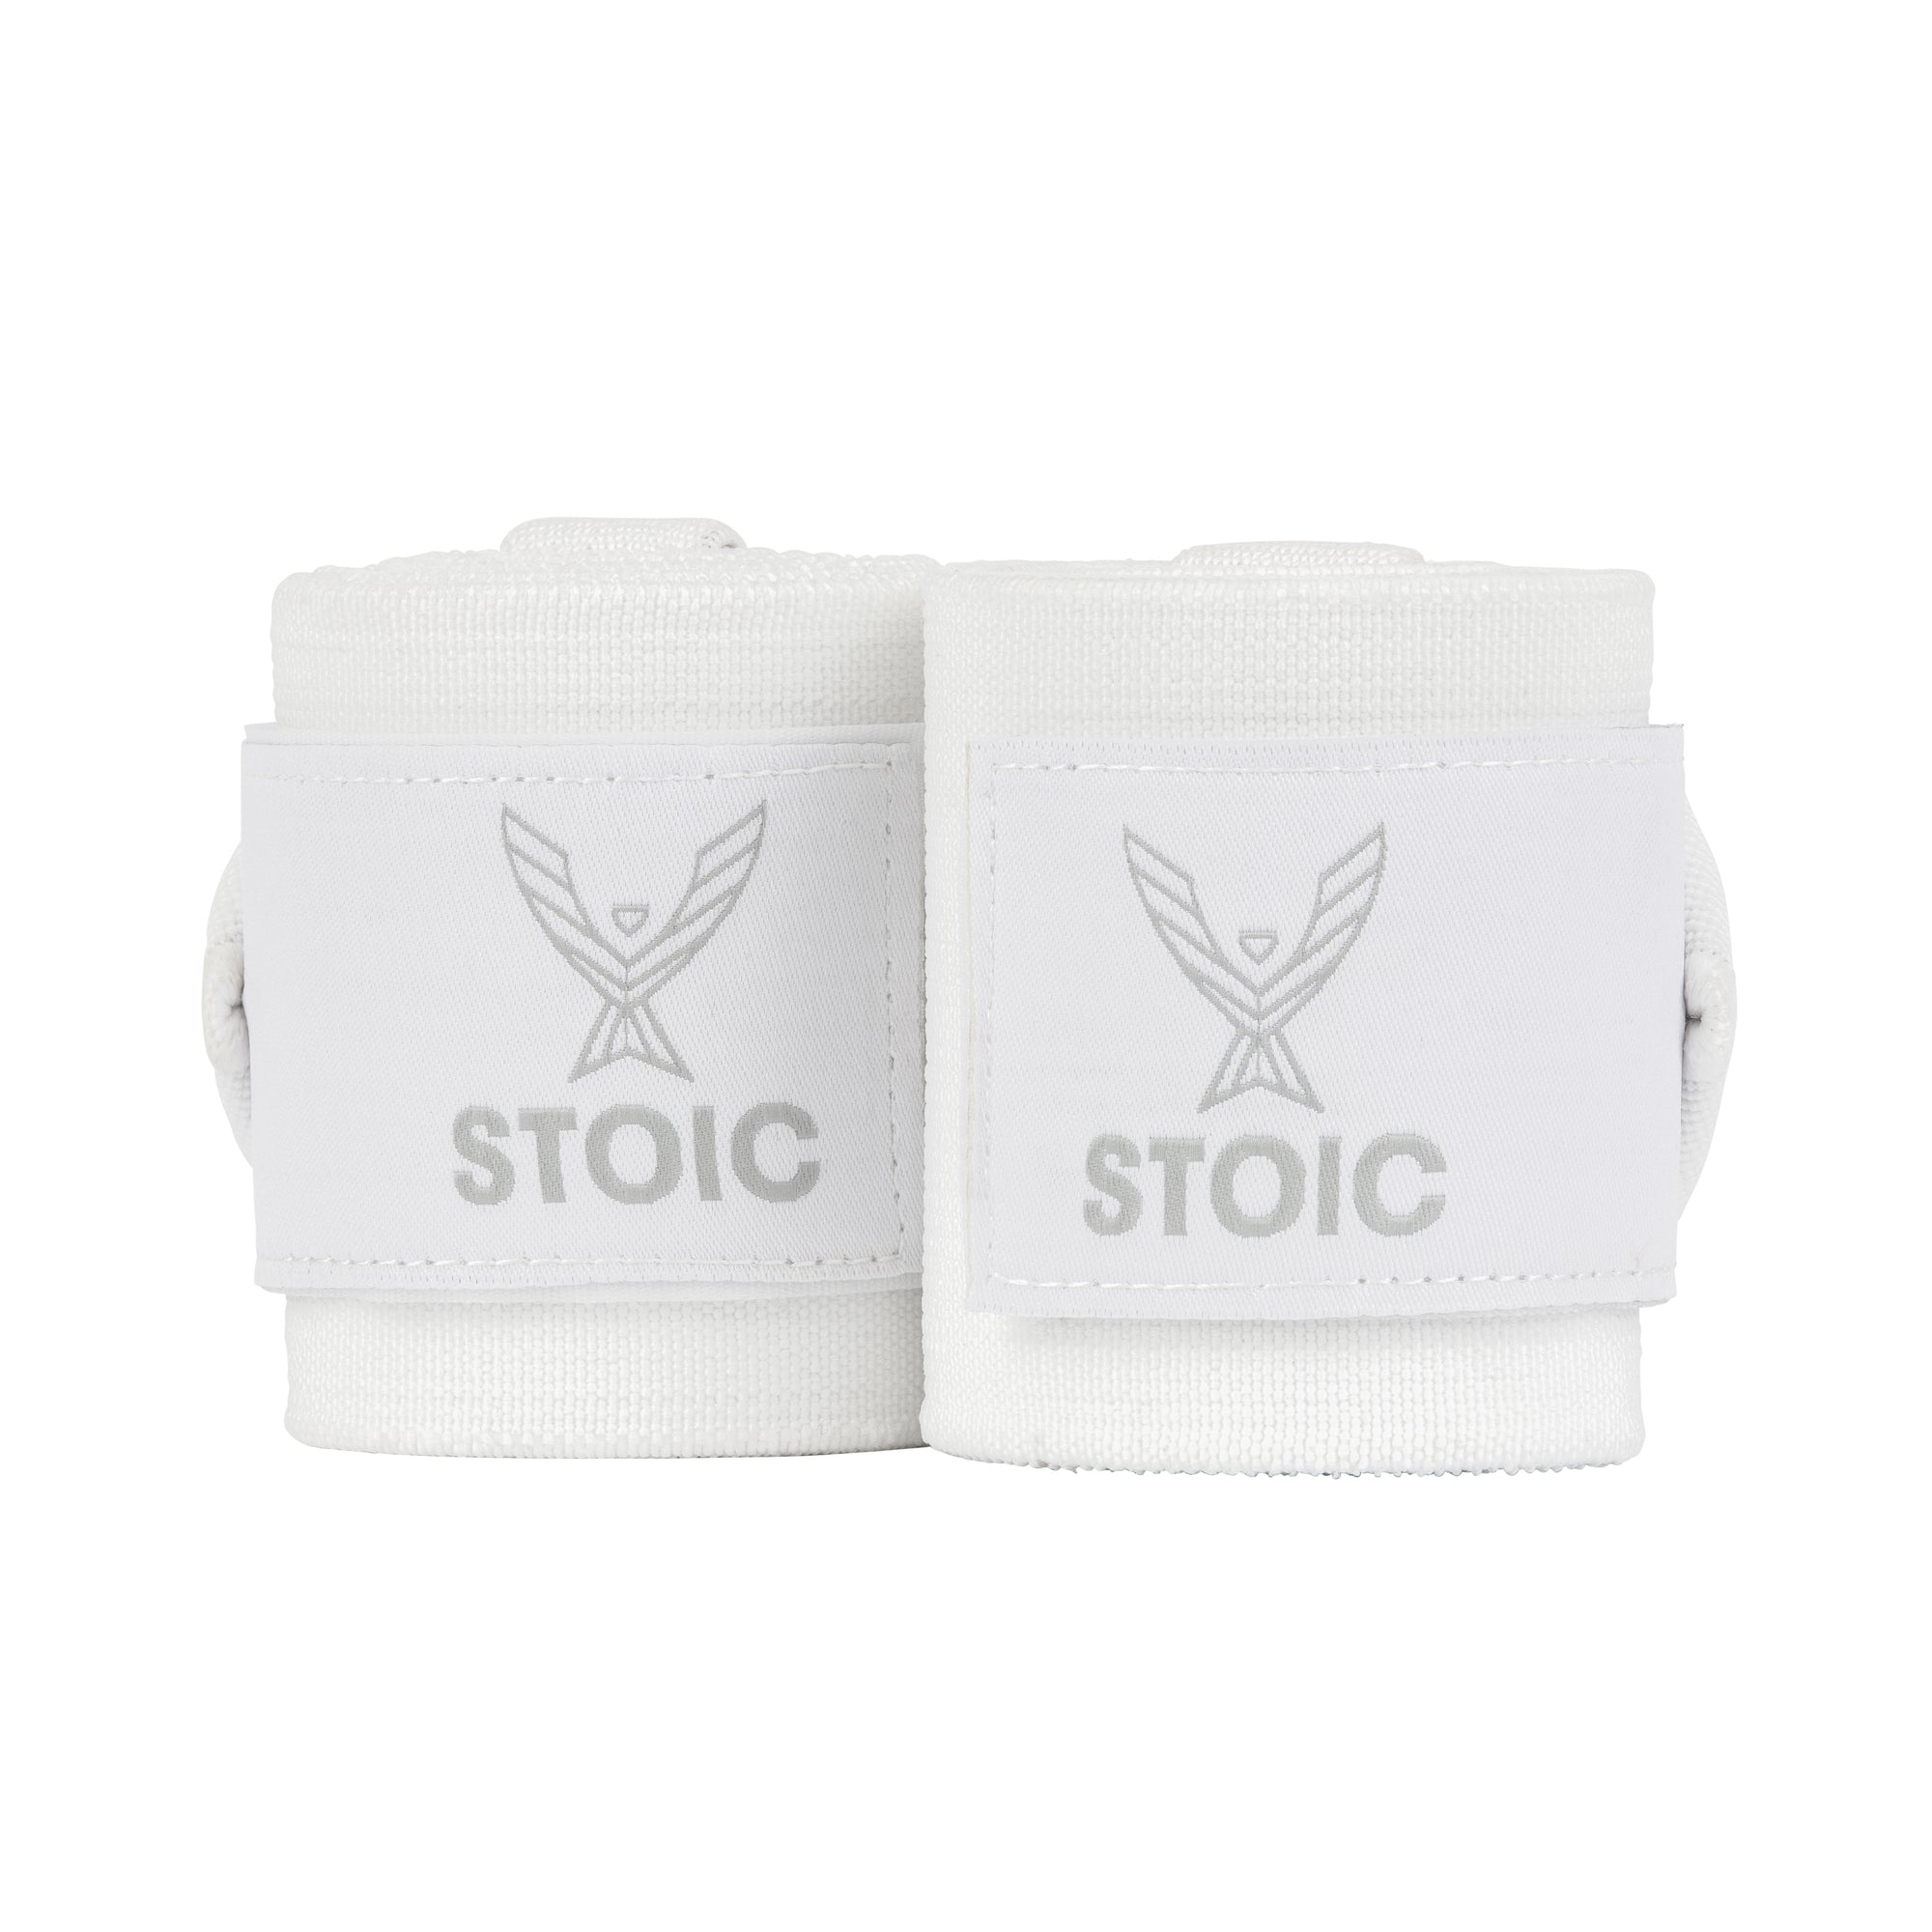 Stoic Wrist Wraps - White